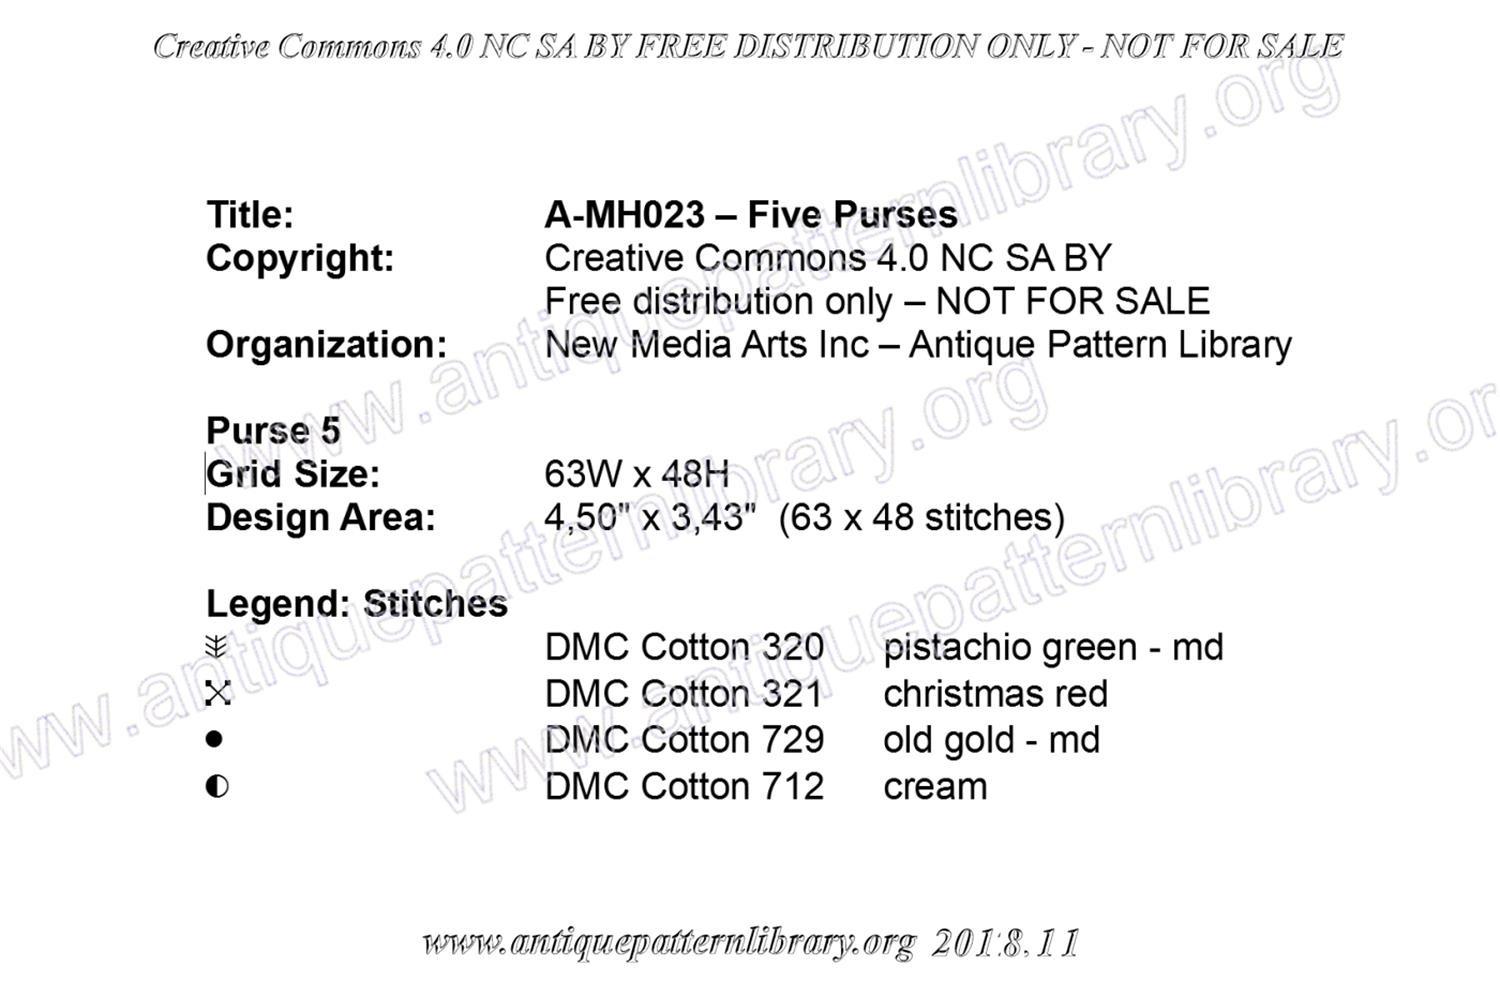 A-MH023 Five purses